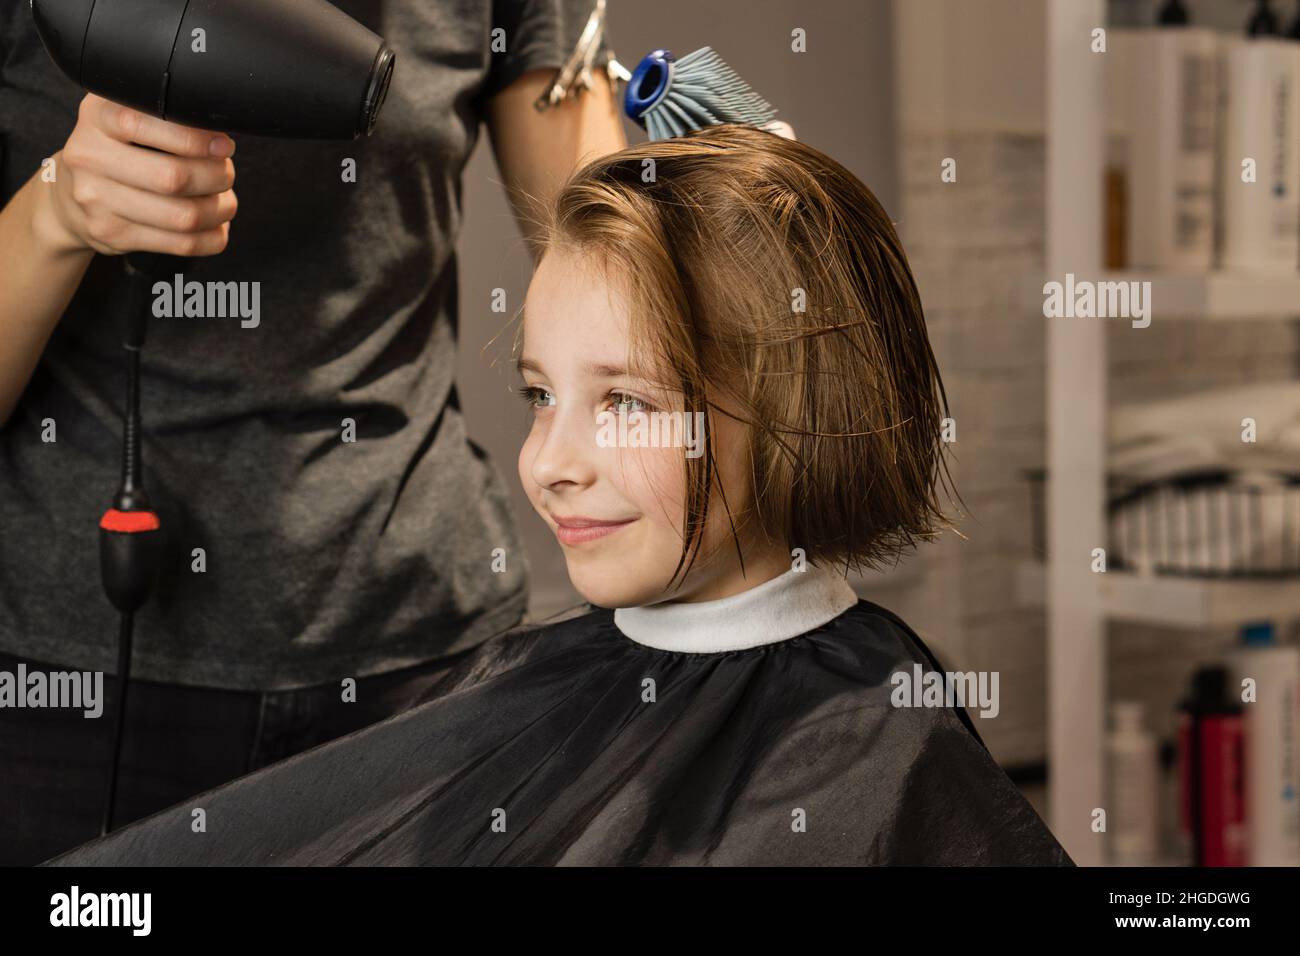 Friseur Föhnen Modell kurze nasse Haare nach dem Schneiden. Das zufriedene Kind sieht im Spiegel aus und bewundert das neue Image. Das kurzhaarige Mädchen lächelt im Friseurladen Stockfoto